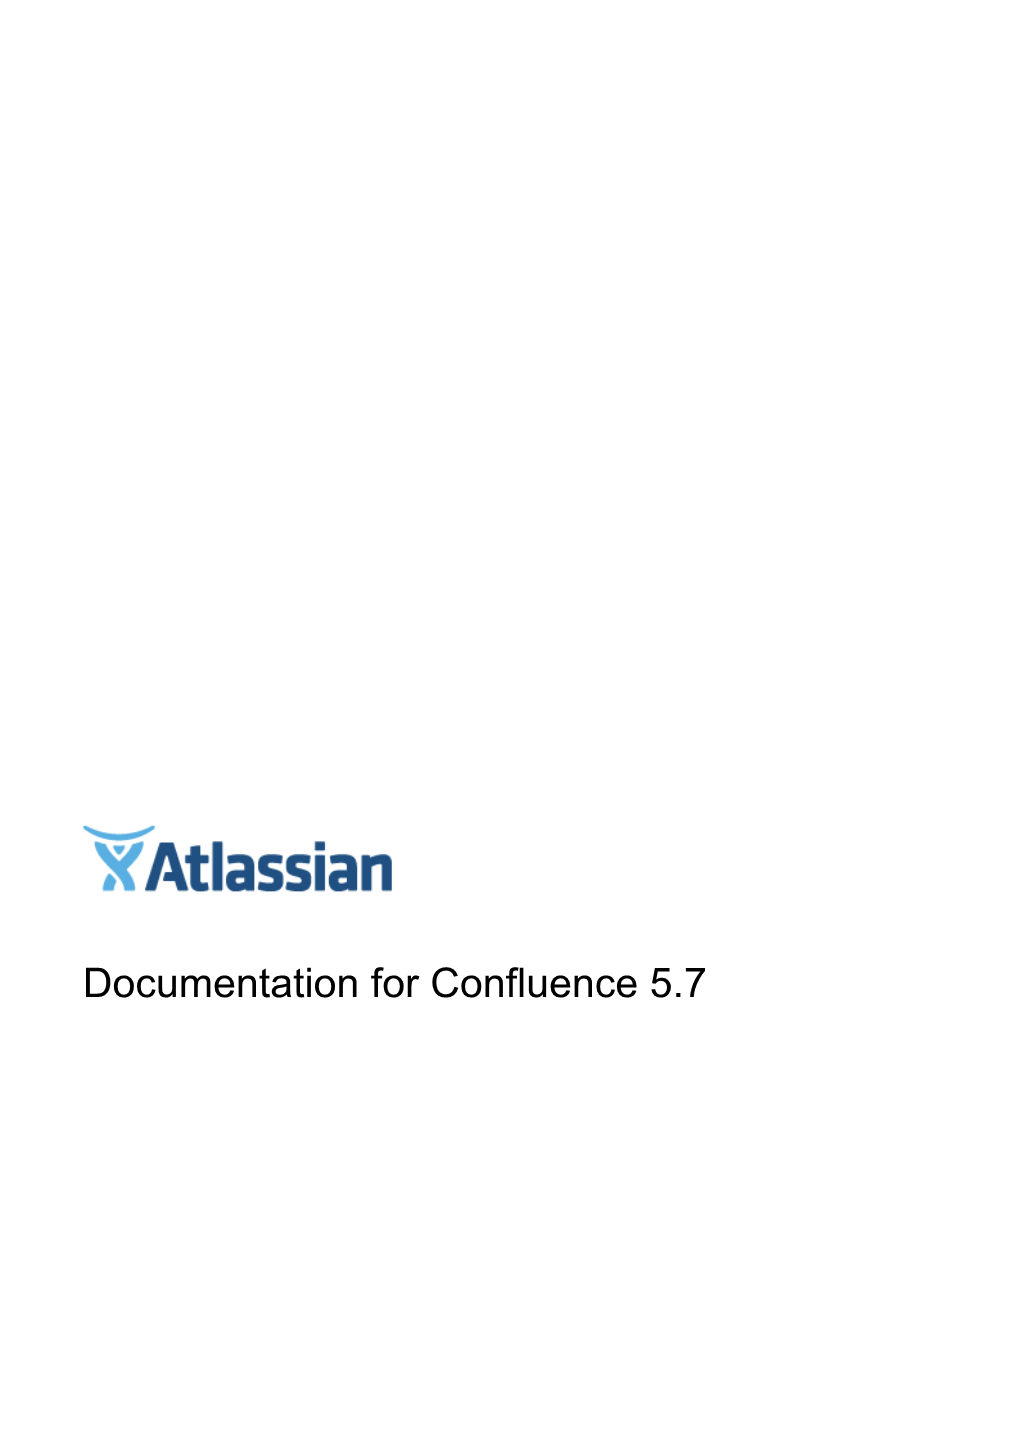 Documentation for Confluence 5.7 Confluence 5.7 Documentation 2